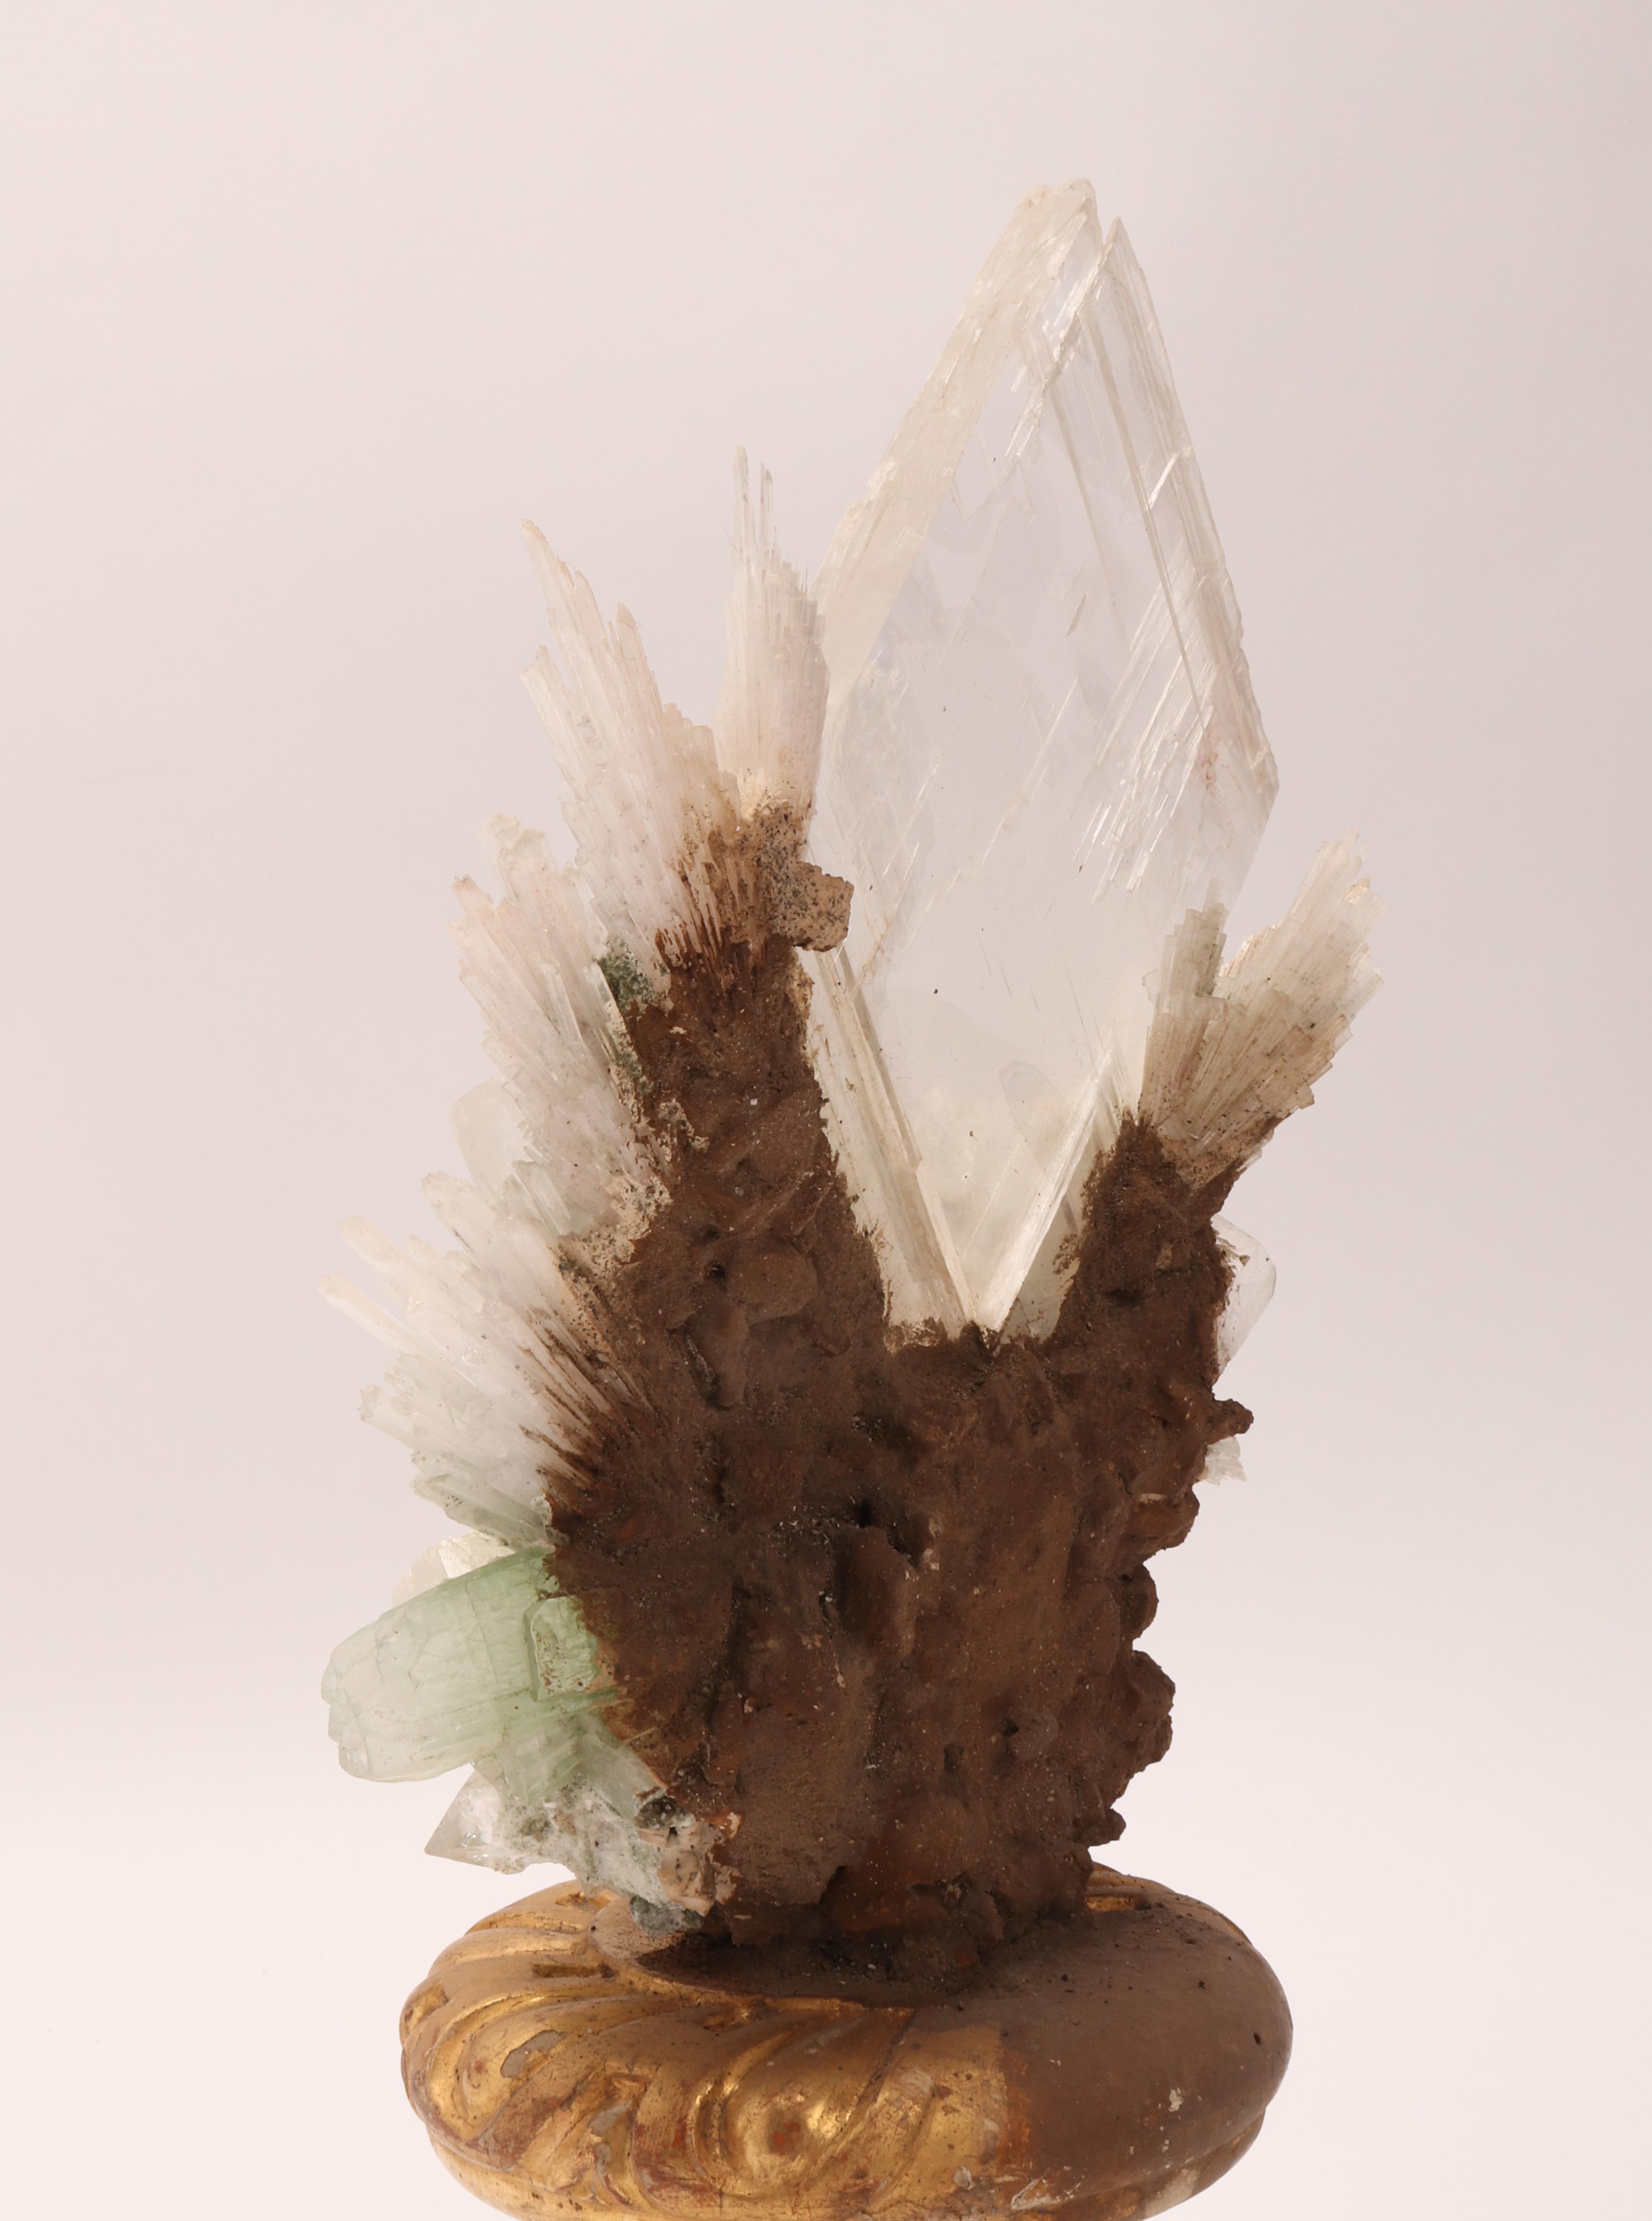 Natural Specimen Apophilite, Quartz and Calcite Flowers Crystals, Italy 1880 1